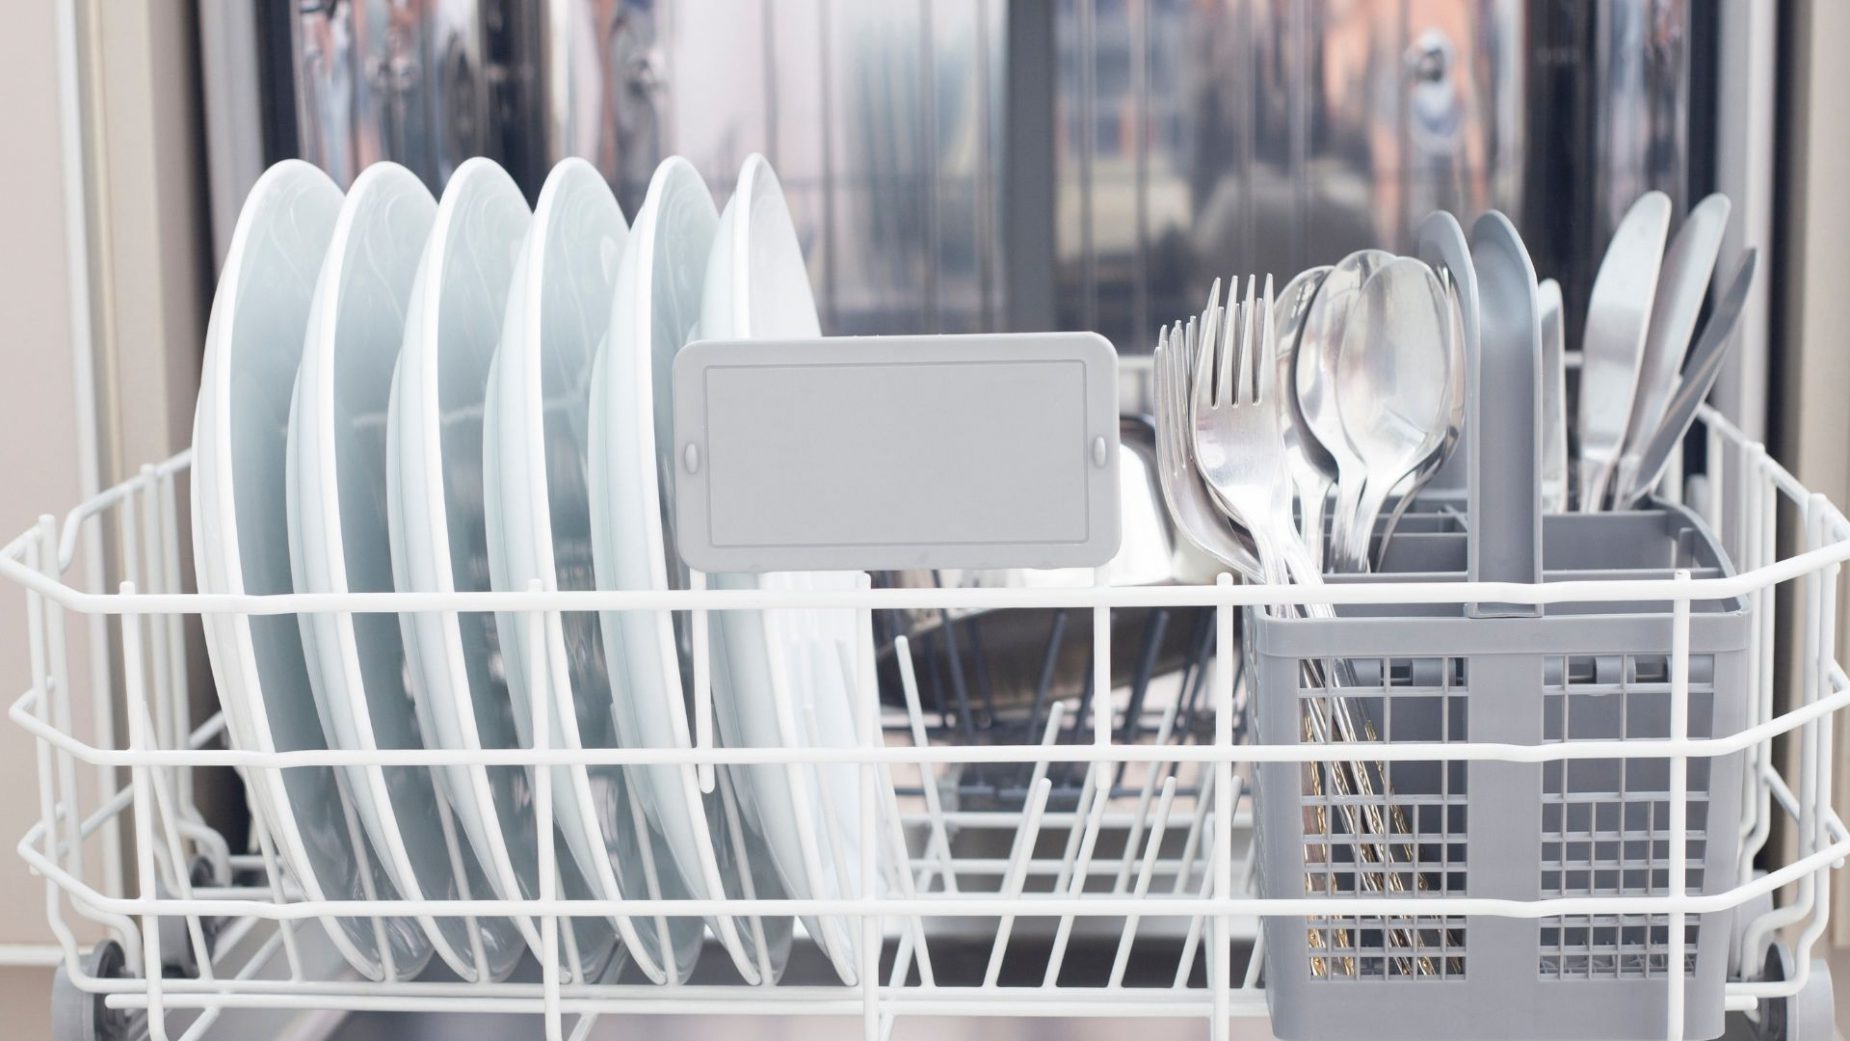 Dishwashers Market